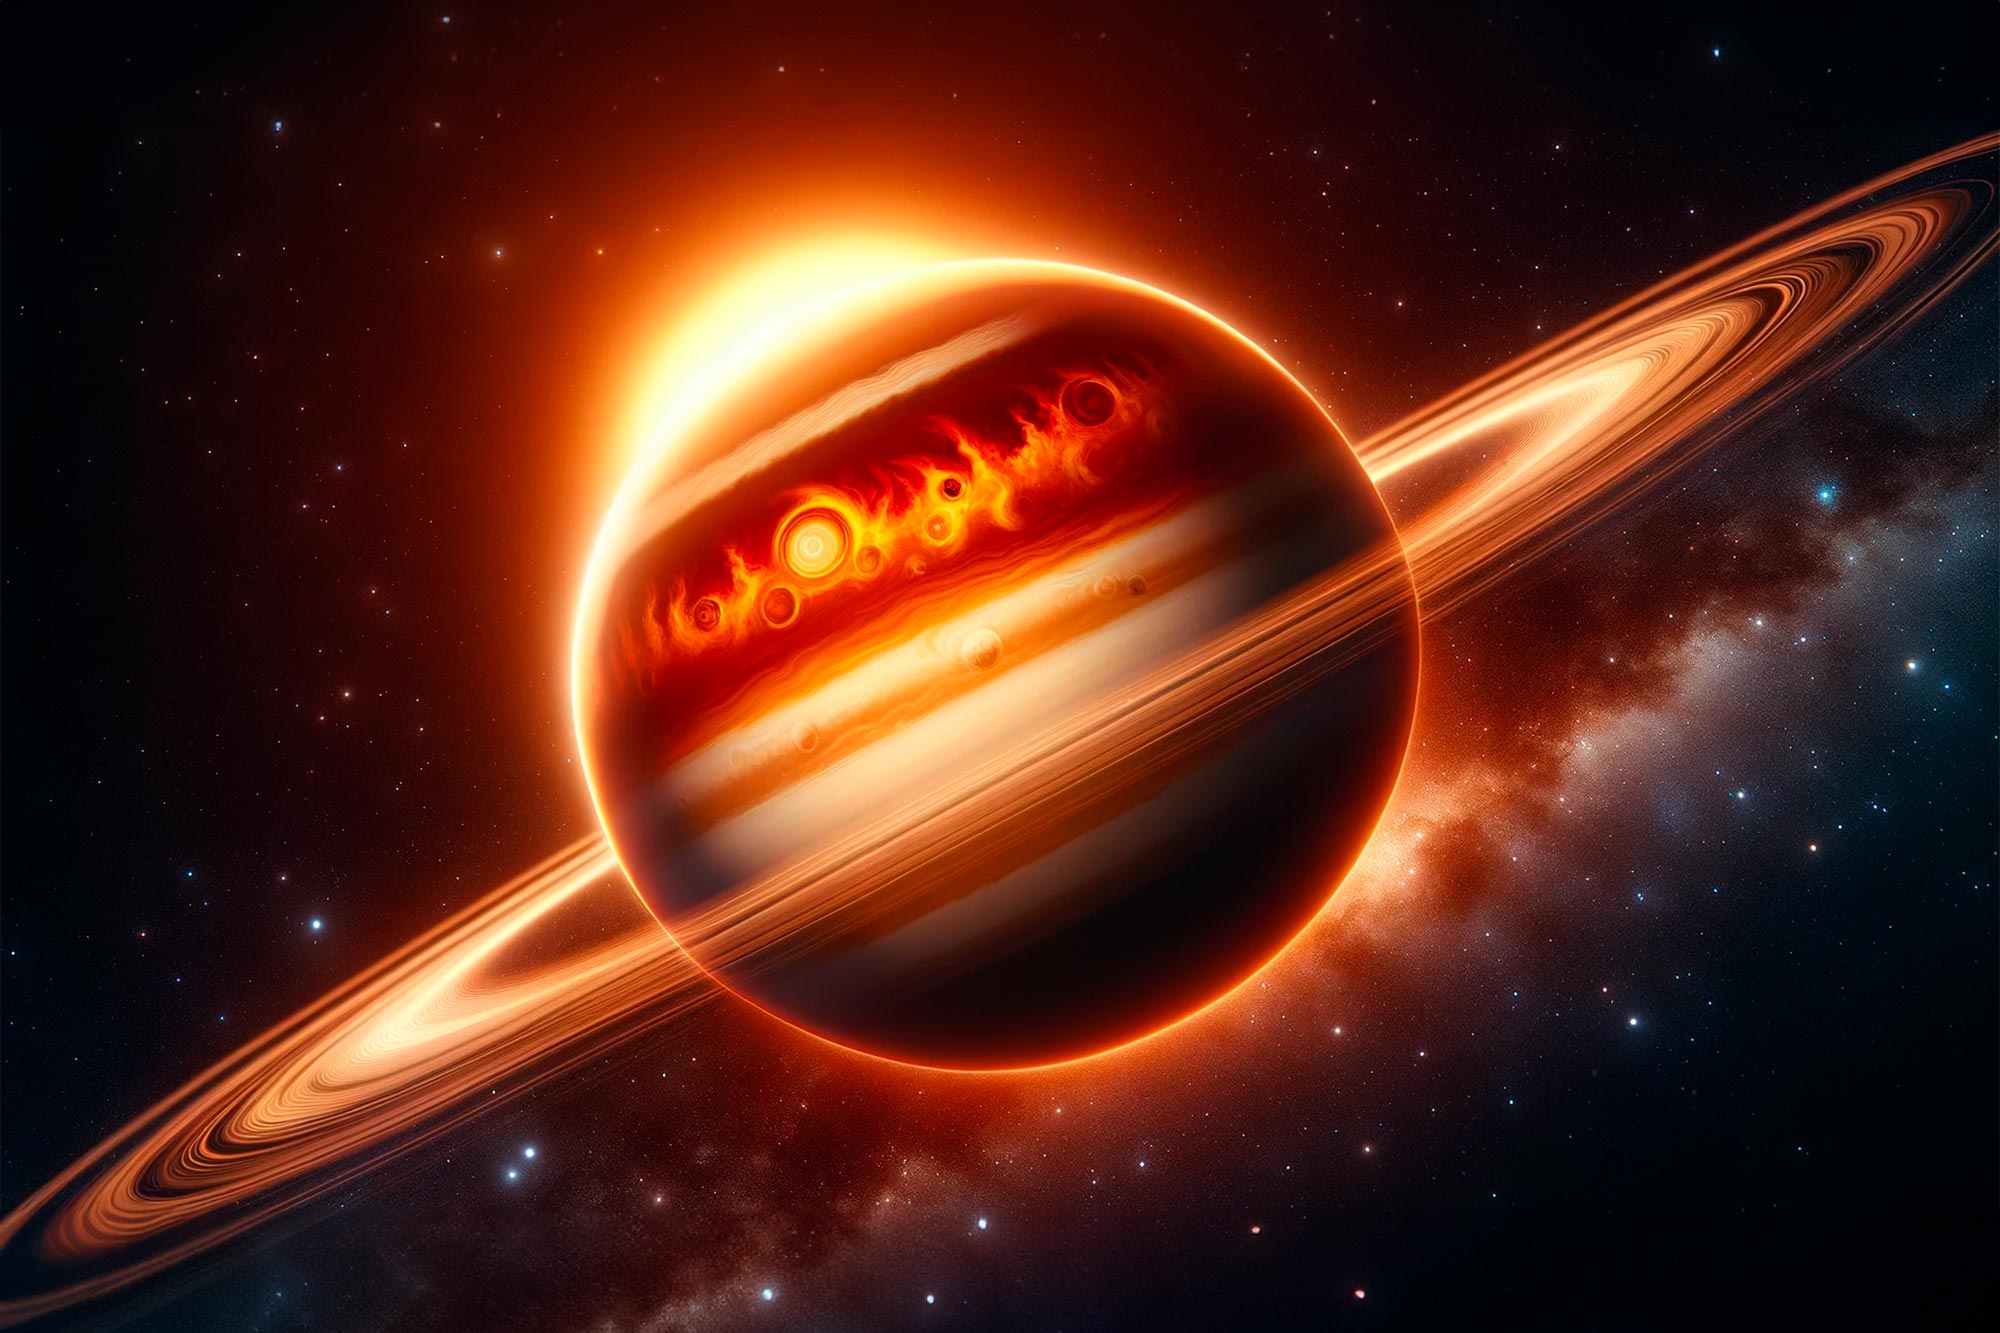 Desvendando os segredos do “quente Saturno” e sua estrela salpicada